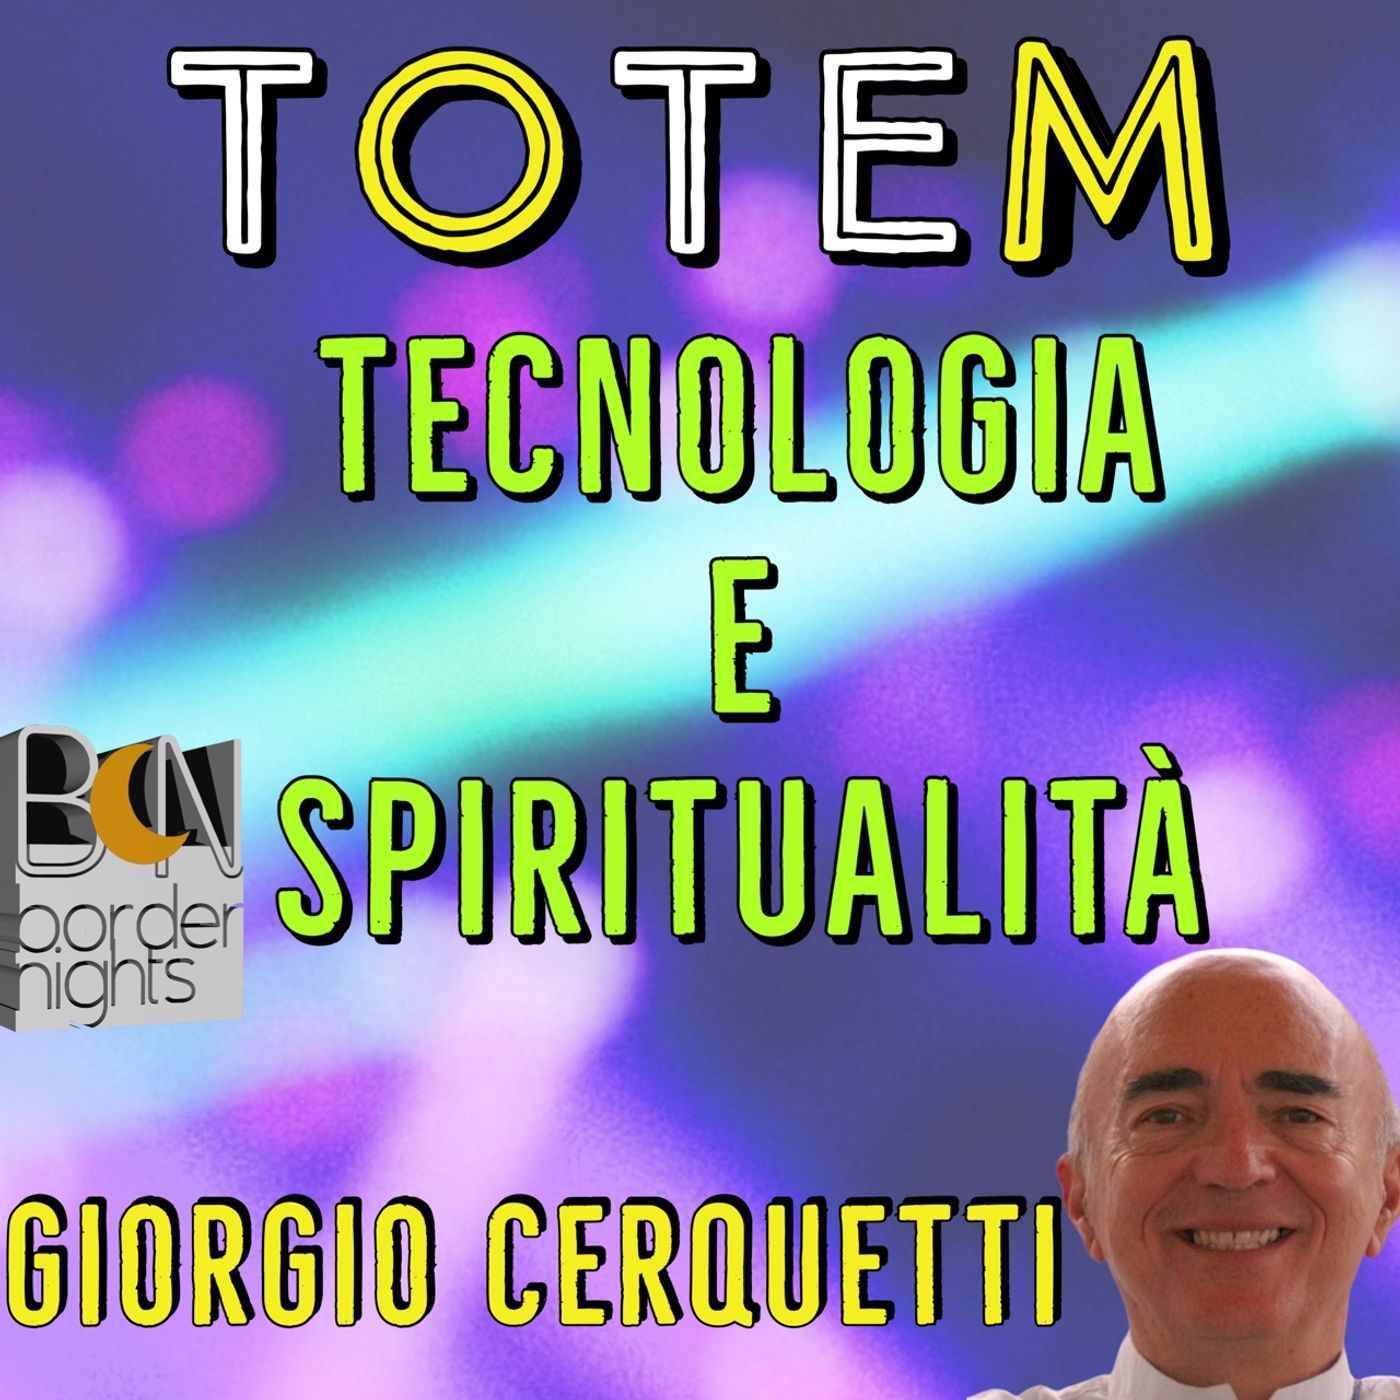 TECNOLOGIA E SPIRITUALITA' - TOTEM - GIORGIO CERQUETTI